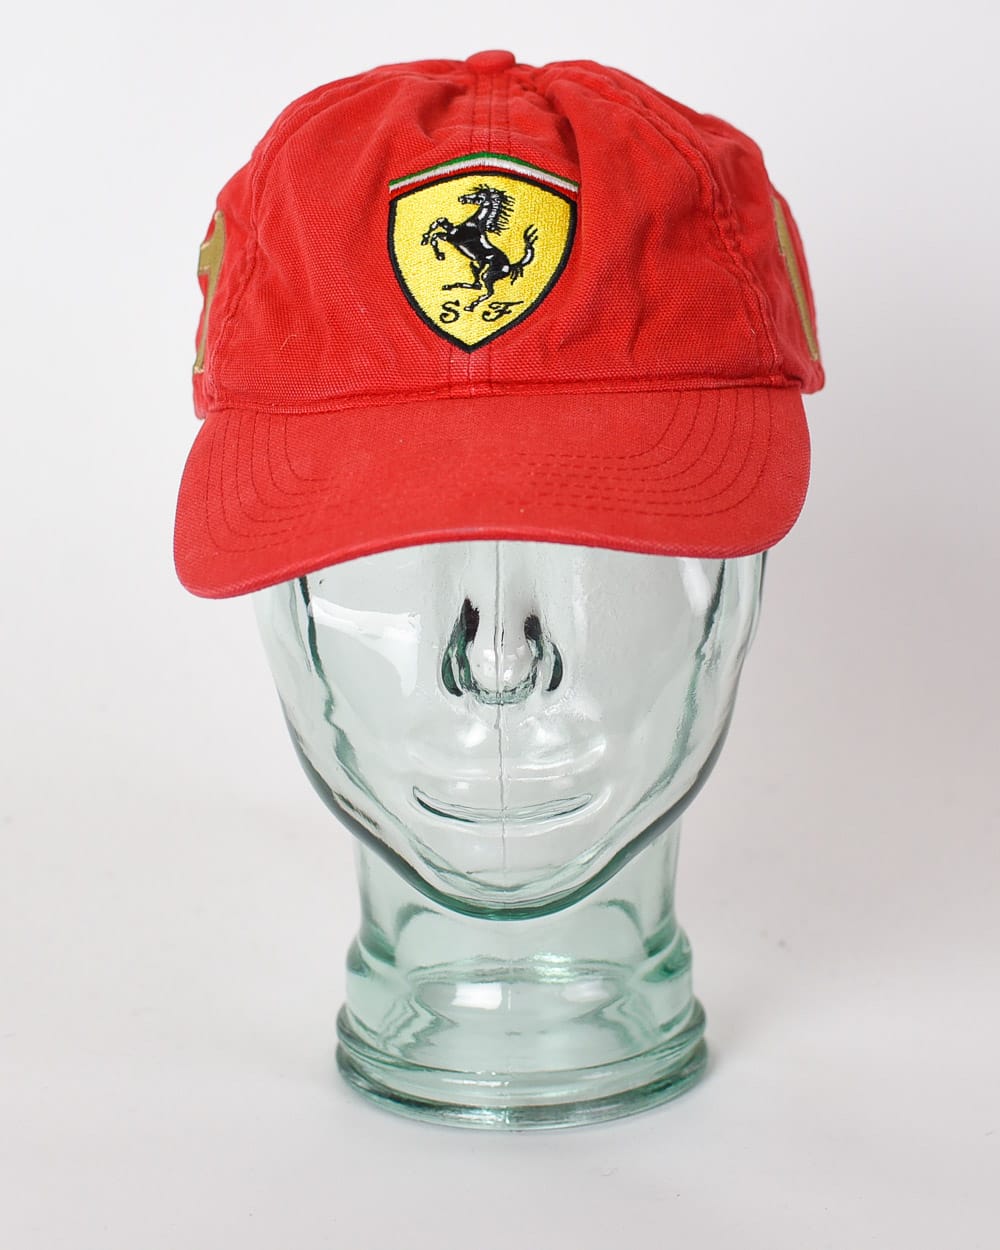 Red Scuderia Ferrari F1 World Champion 2004 Cap